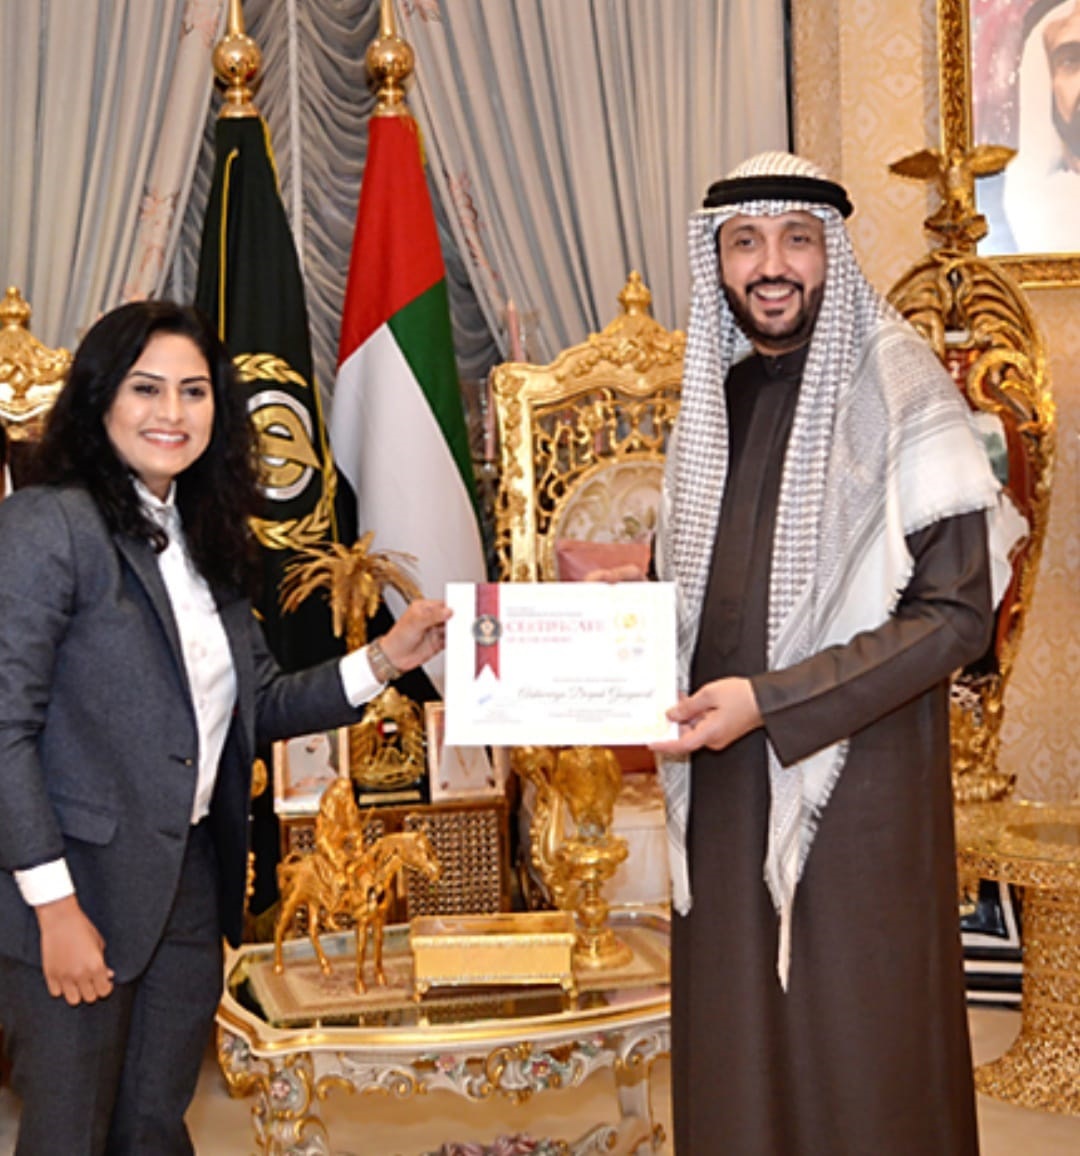 Aishwarya Gaigwal honored with Al Jaruni Award in Dubai